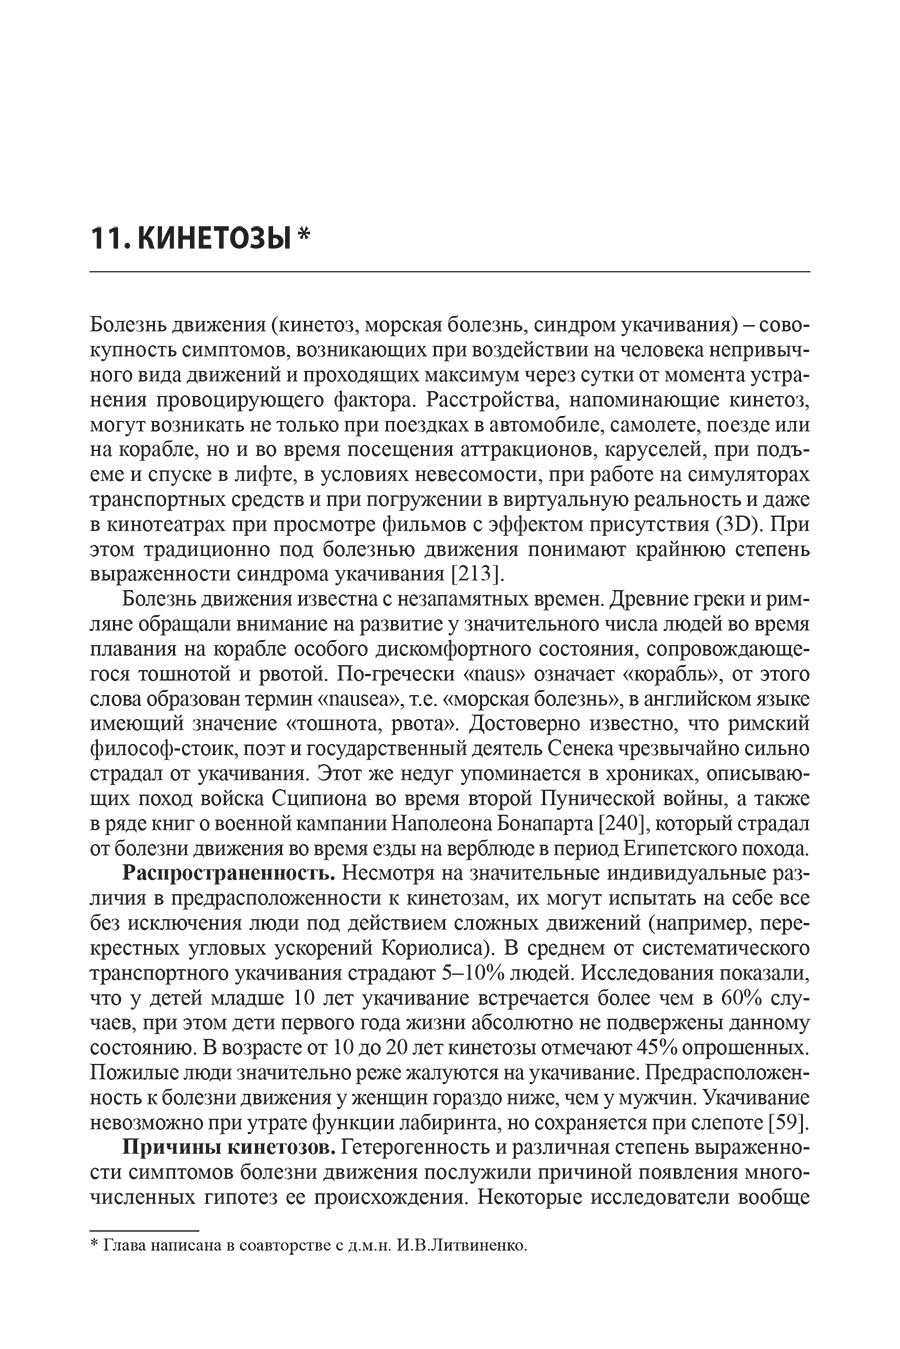 Пример страницы из книги "Головокружение. Патогенетическая реконструкция и практические рекомендации" - Живолупов С. А.